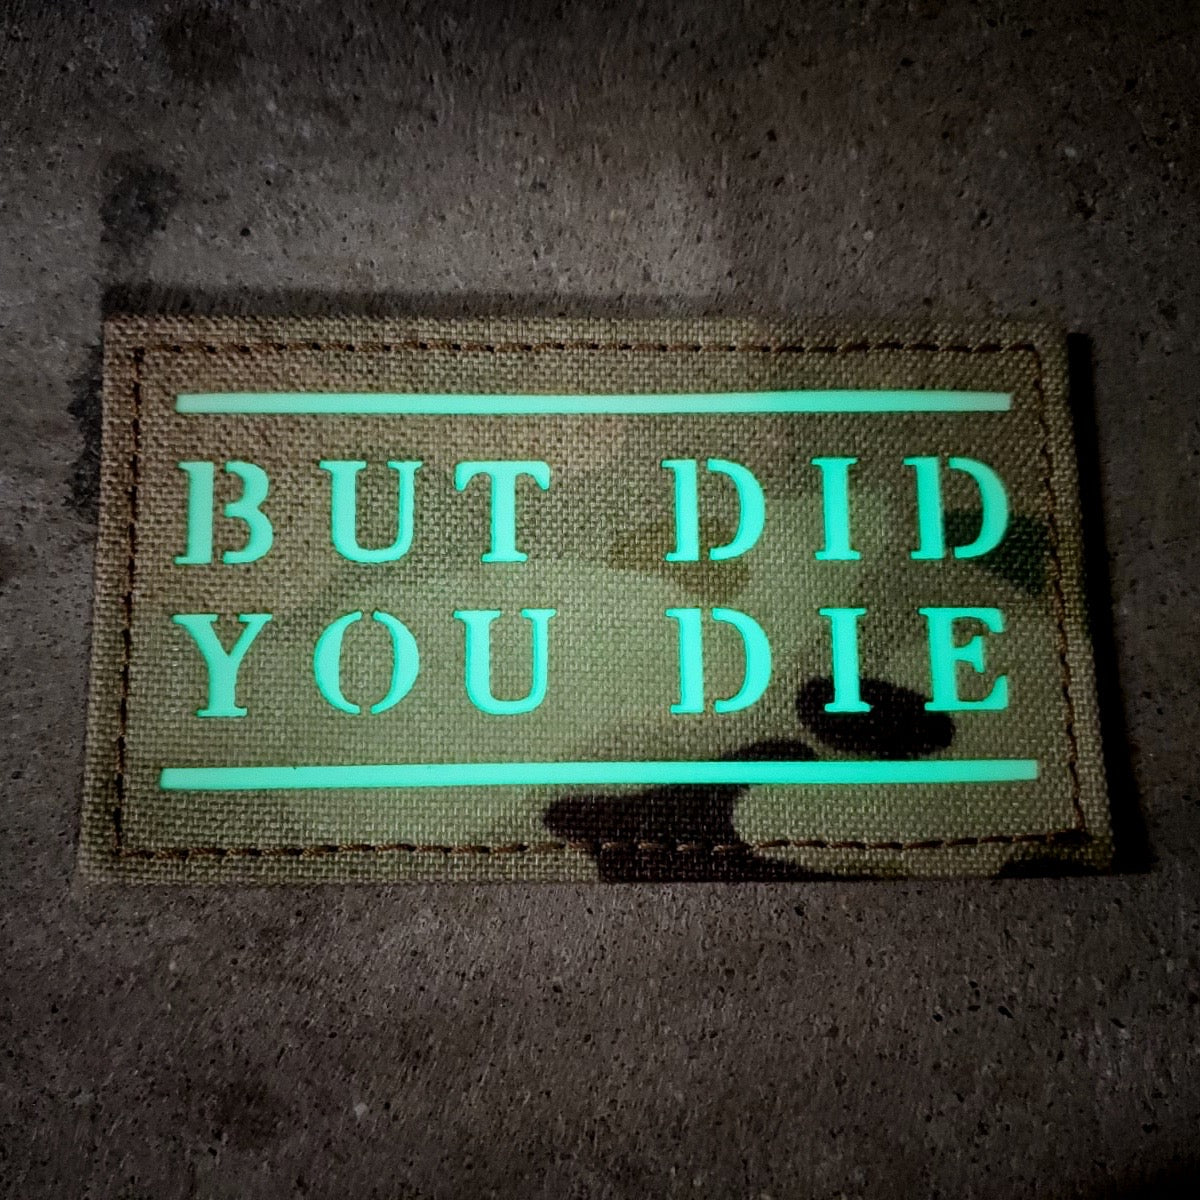 “But did you die”